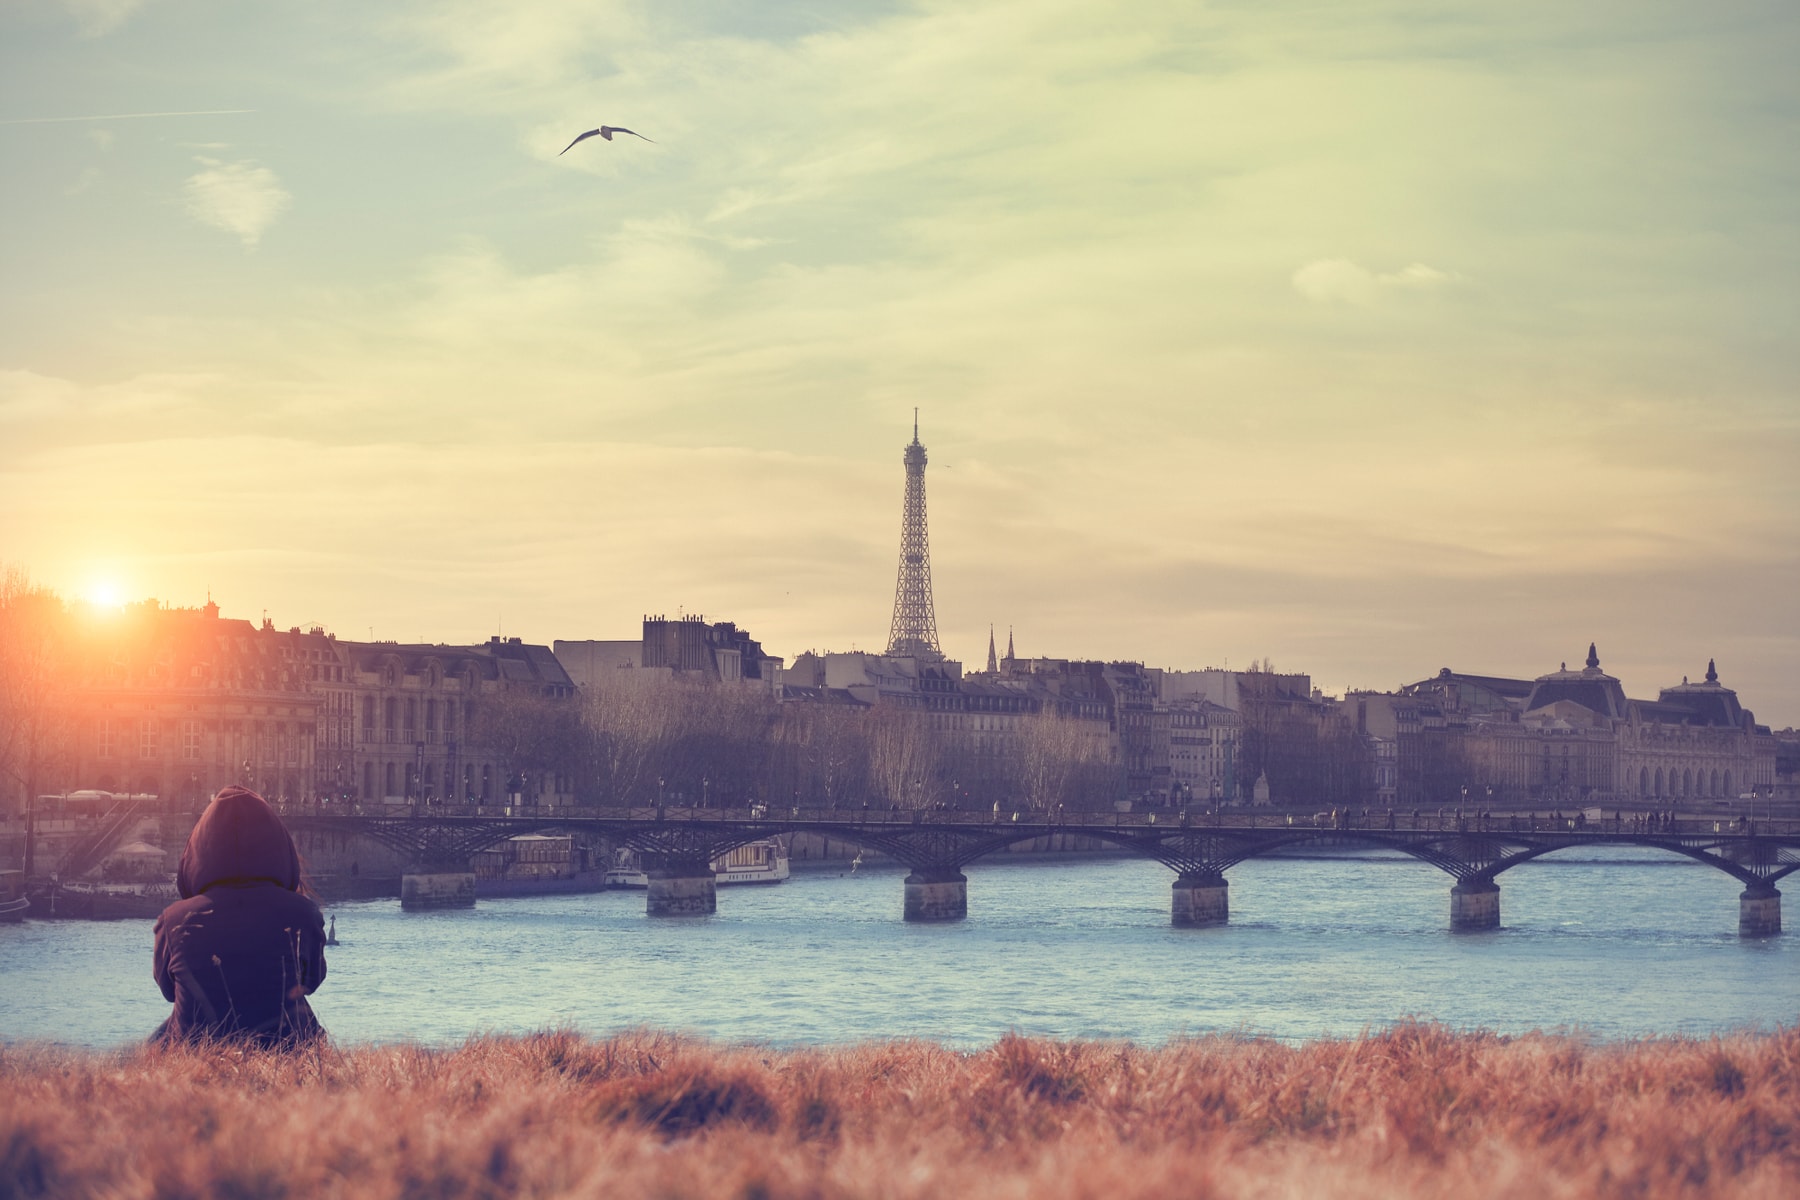 何日滞在しても飽きない素晴らしい街 パリの観光 旅行体験談 Pokke Magazine